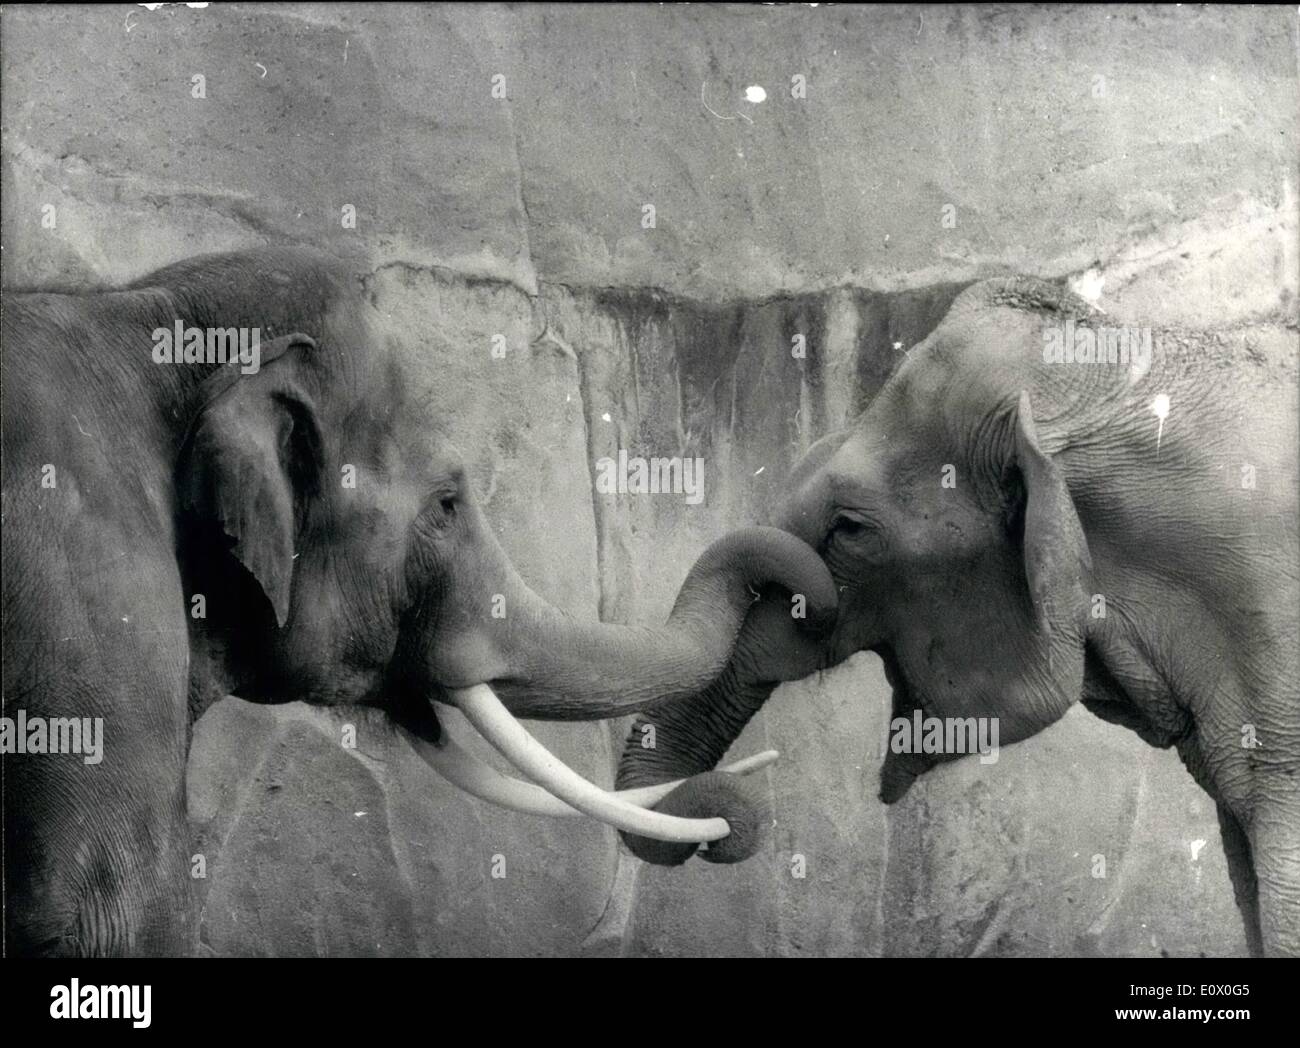 Sett. 09, 1964 - Siam combatte l''Siam'', la nuova aggiunta a Vincennes Zoo (un elefante da Siam che ha mantenuto le sue zanne) ha un argomento con un altro elefante maschio che sembra non gradisce il bullismo modi del nuovo arrivato. Foto Stock